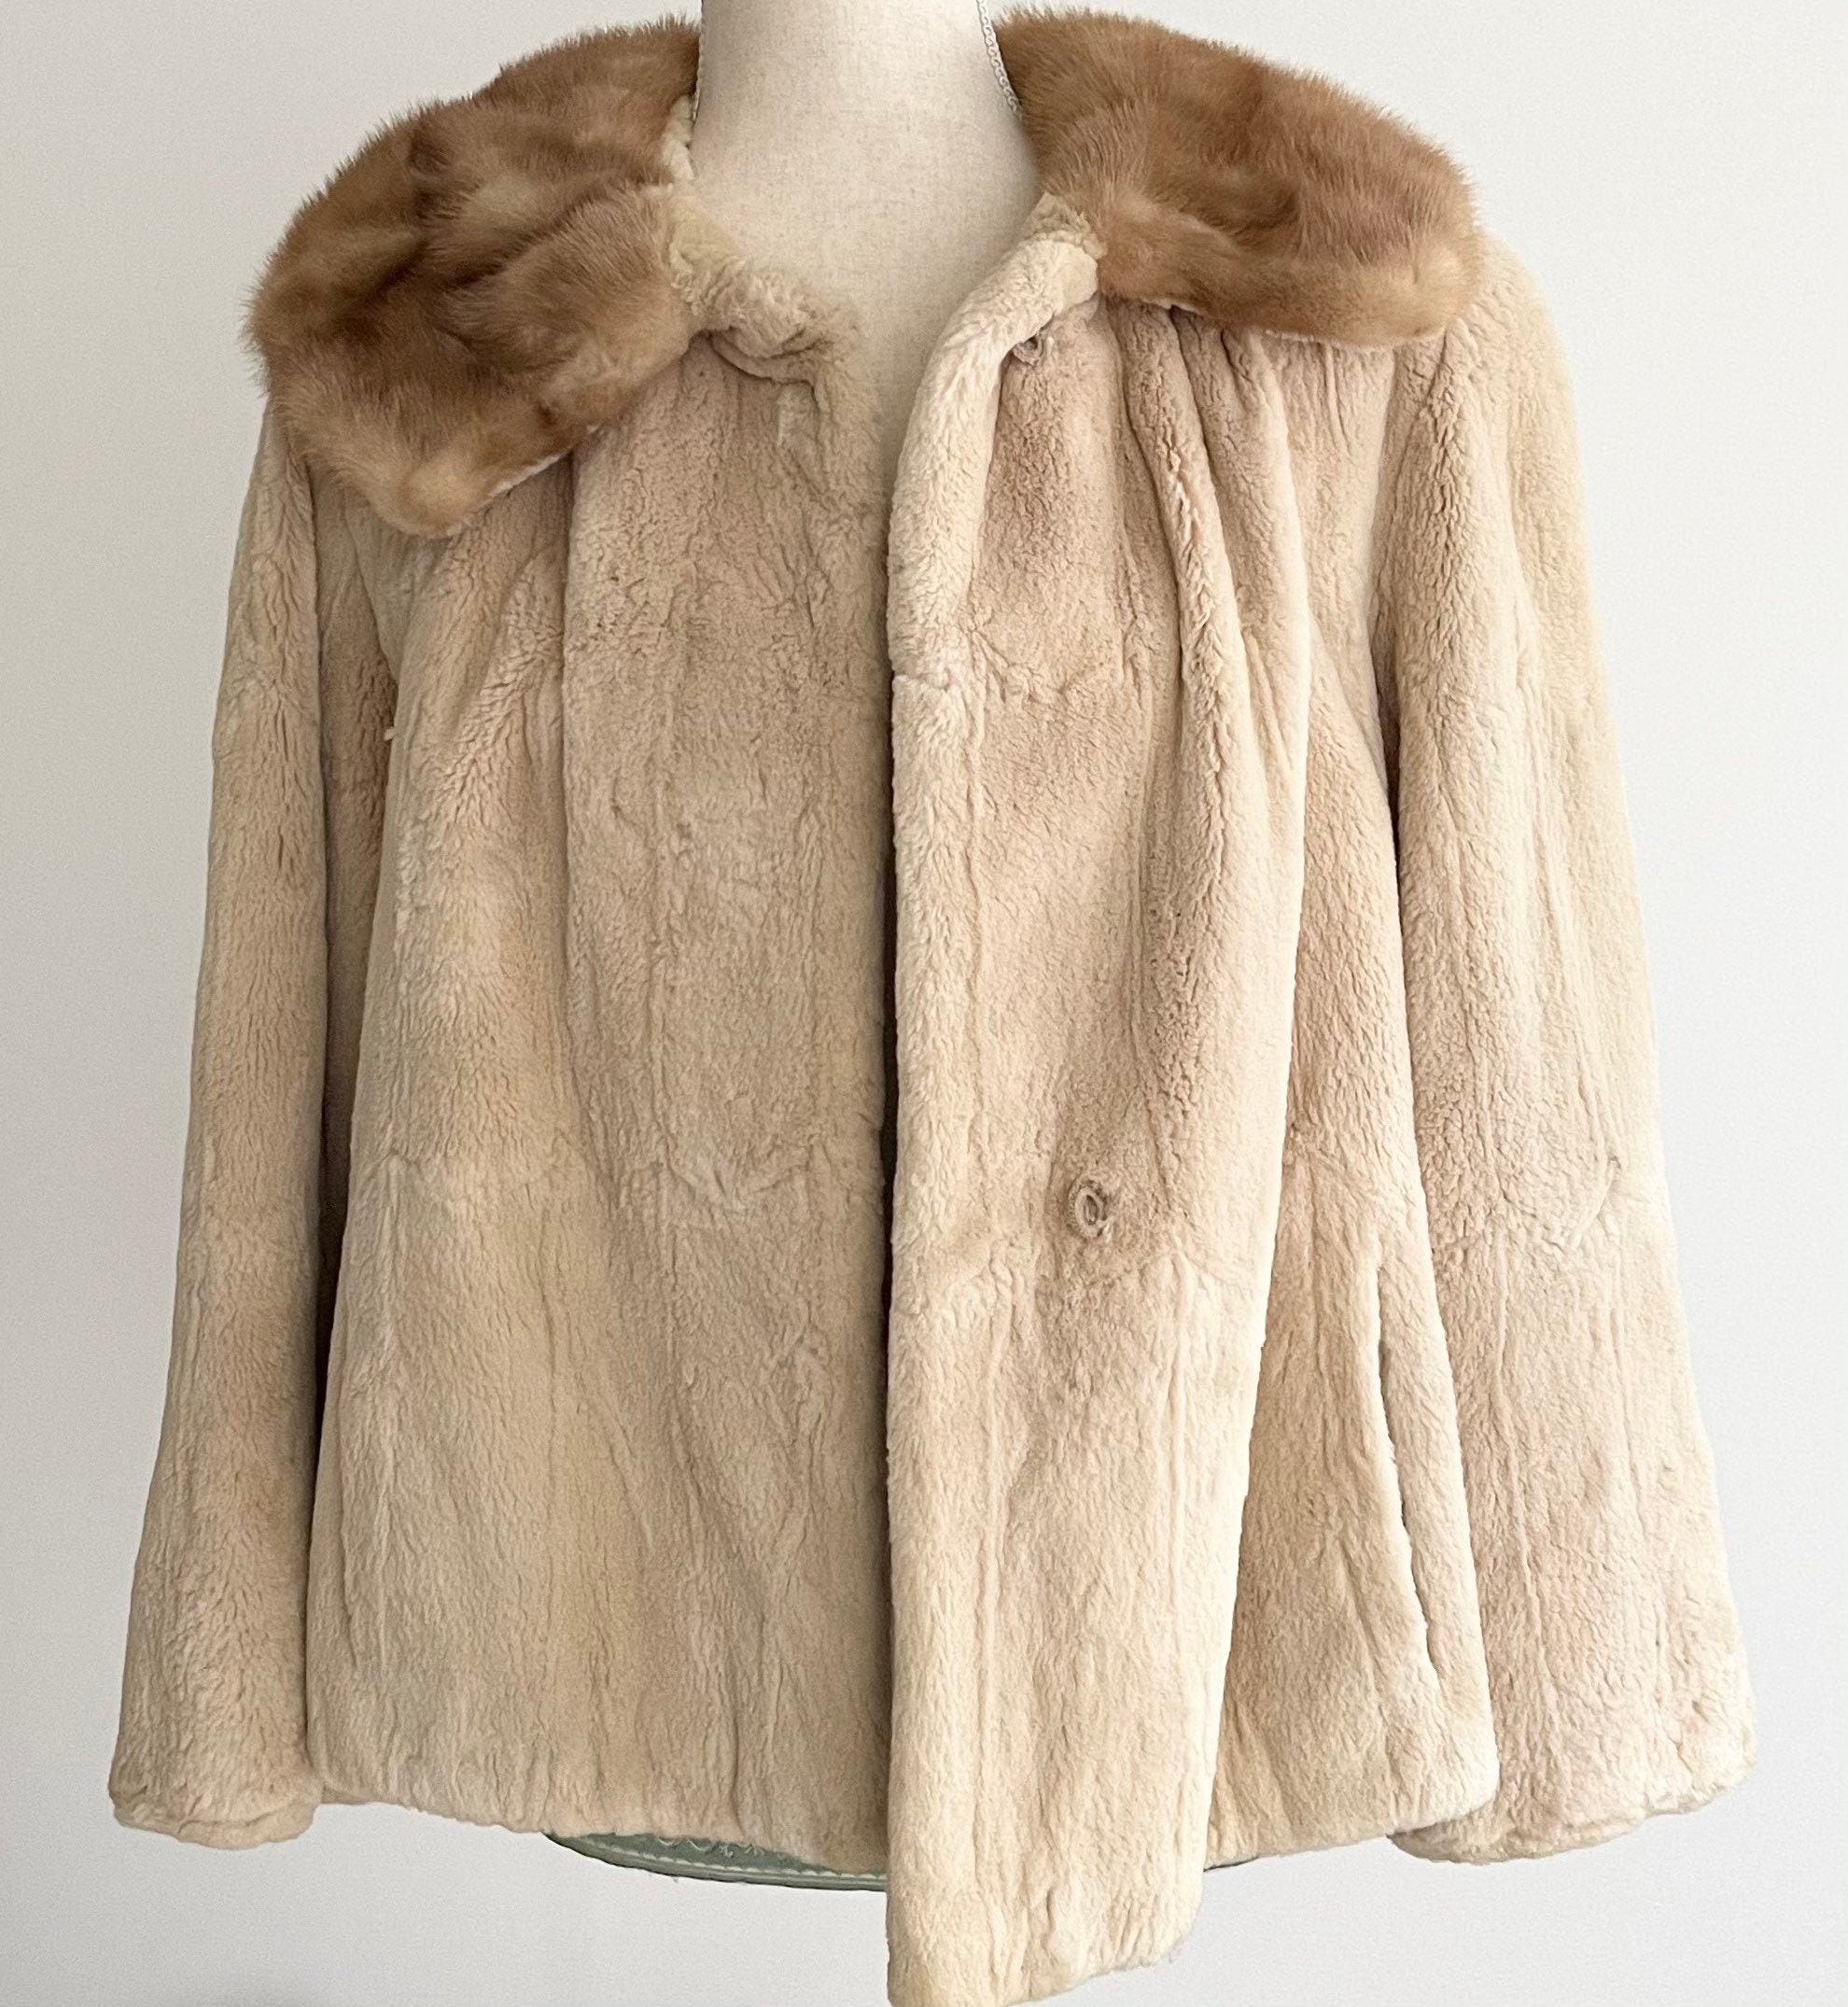 Vintage Brown Mink Fur Collar for Coat or Jacket, 1950s 1960s